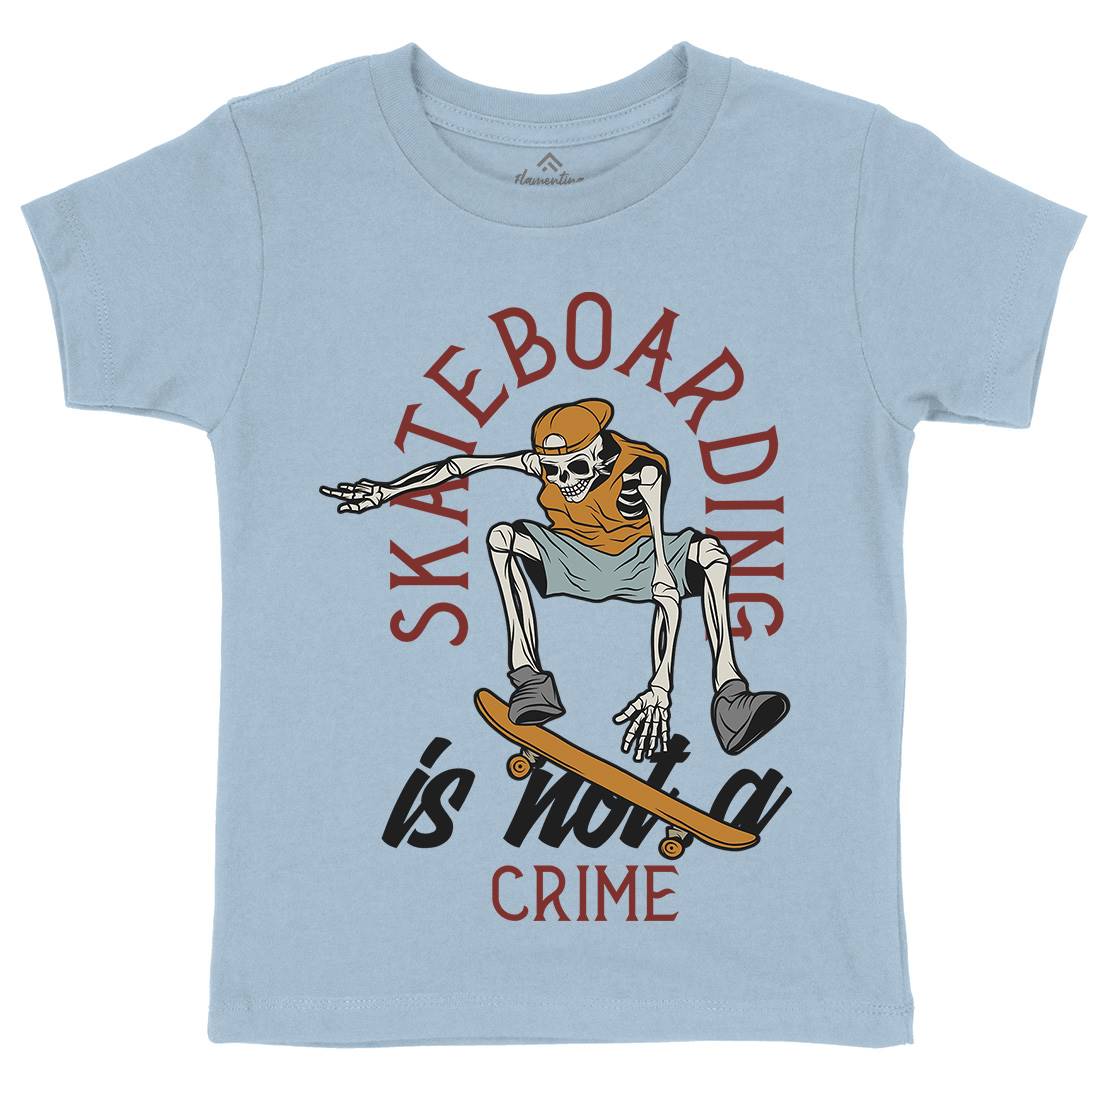 Skateboarding Crime Kids Crew Neck T-Shirt Skate D975